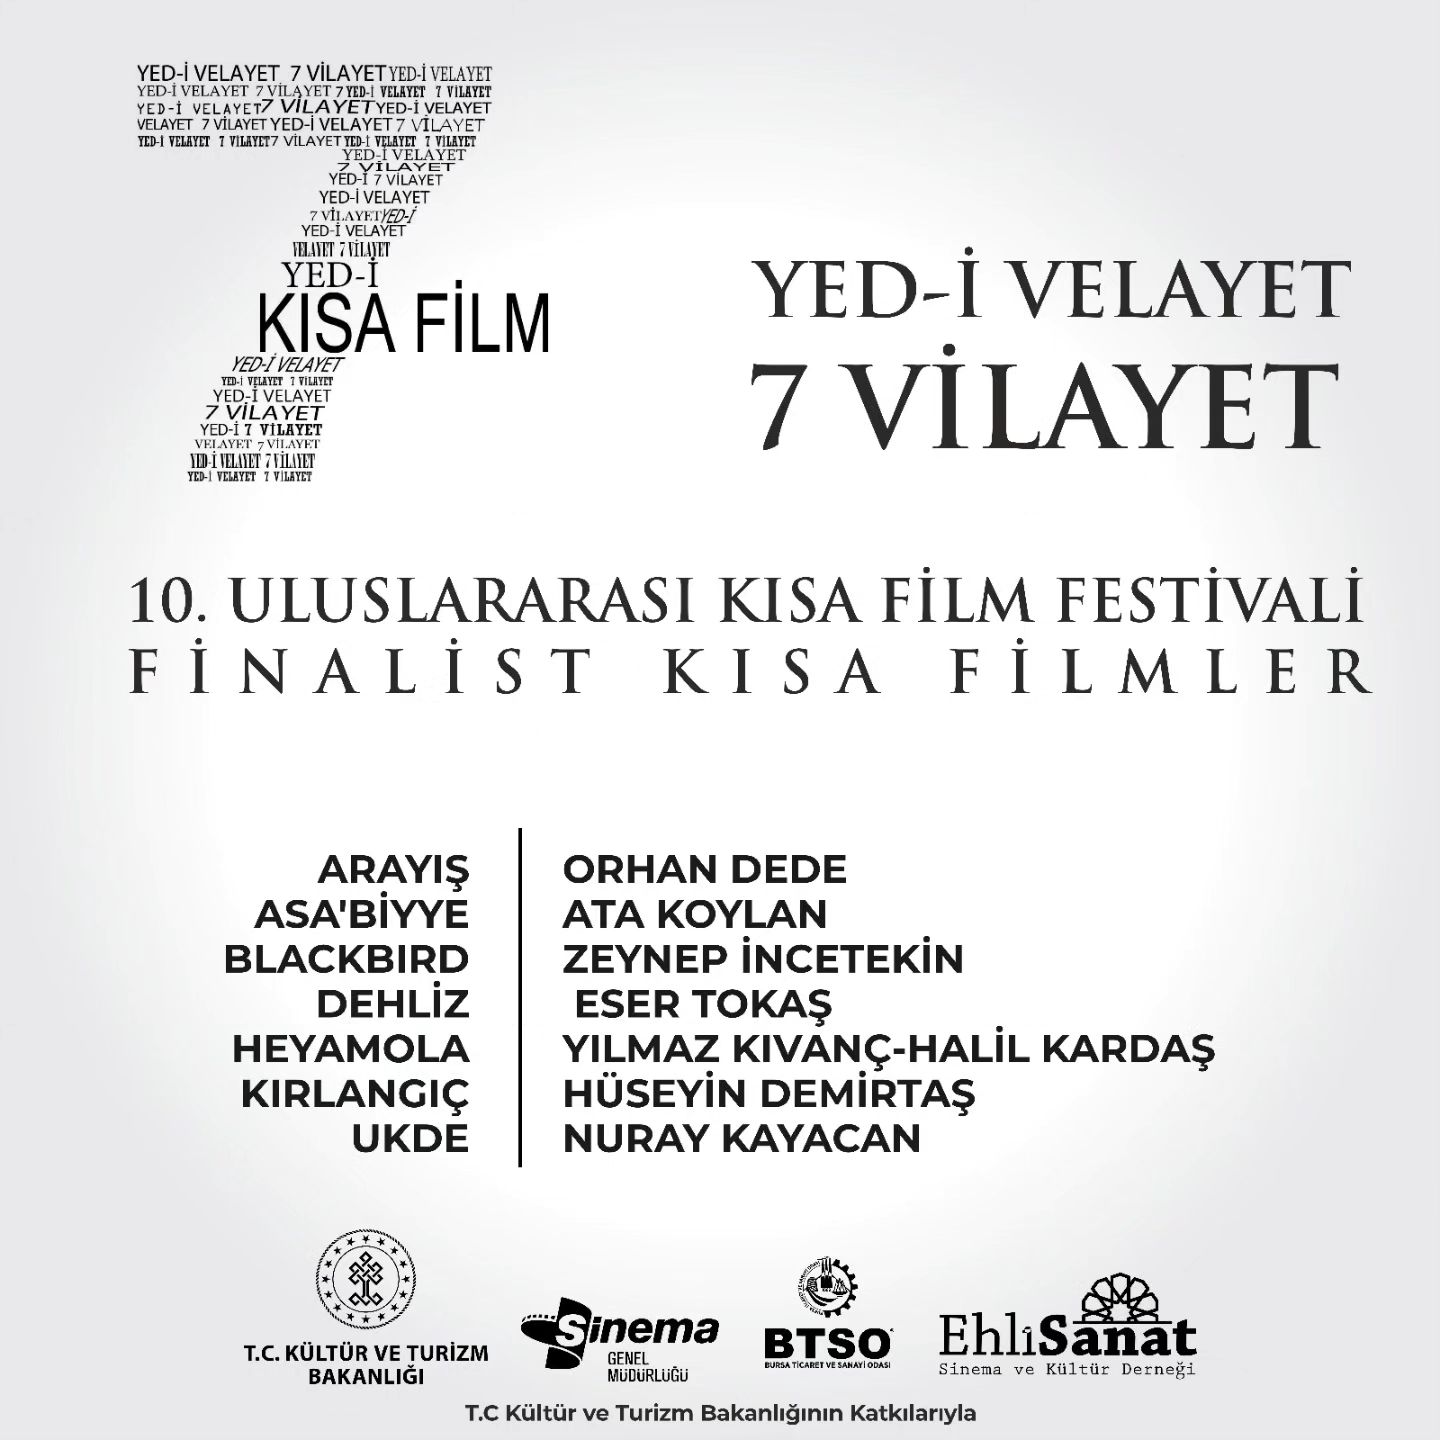 uluslararasi-yed-i-velayet-7-vilayet-kisa-film-festivali-1927